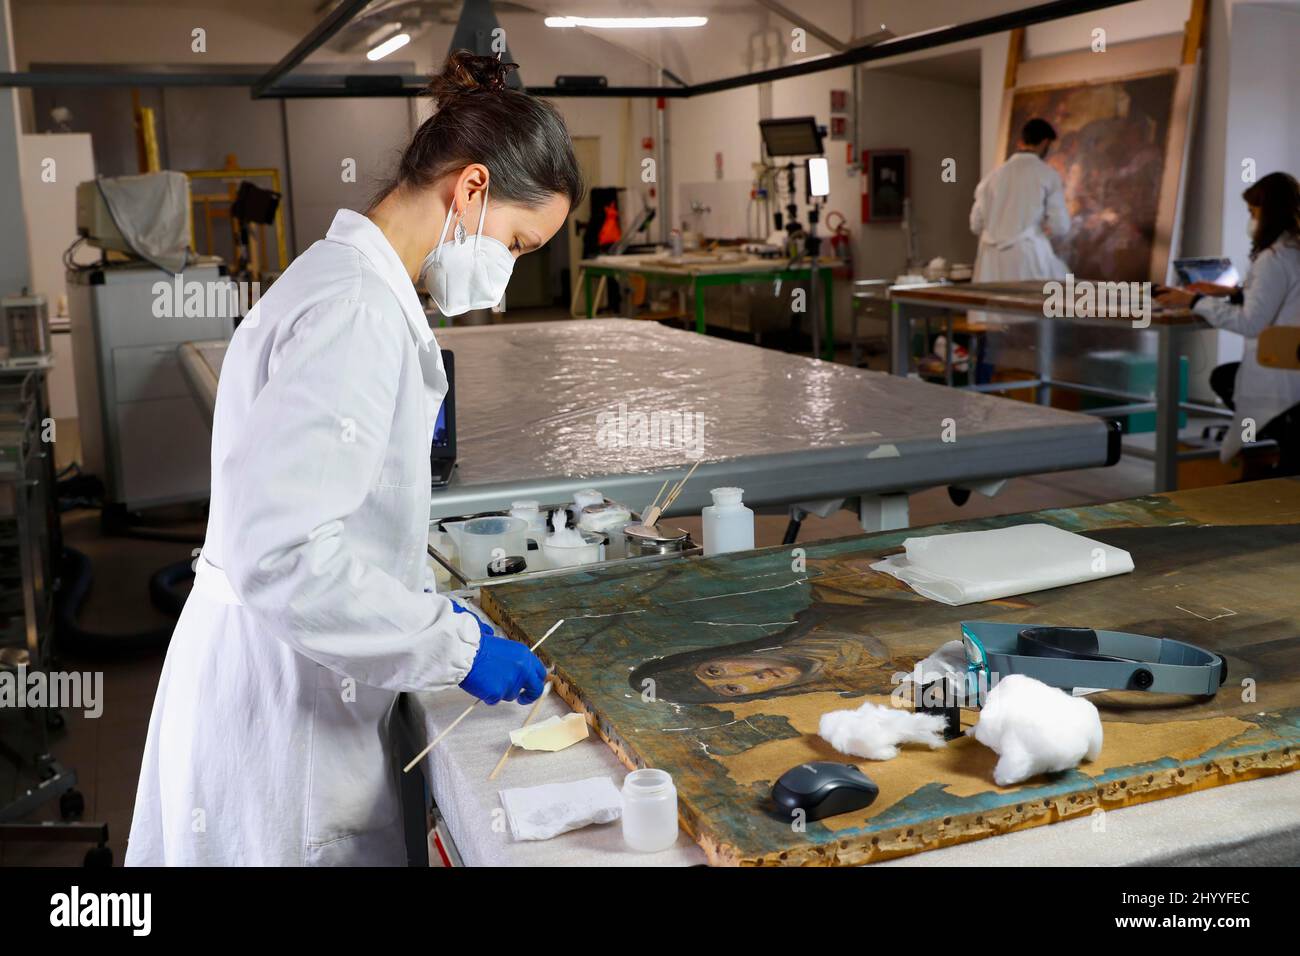 Italia, Roma, 11 marzo 2022 : restauratori al lavoro nei laboratori dell'Istituto Centrale di Restauro di Roma. Foto Remo Casilli/Sintesi/Ala Foto Stock